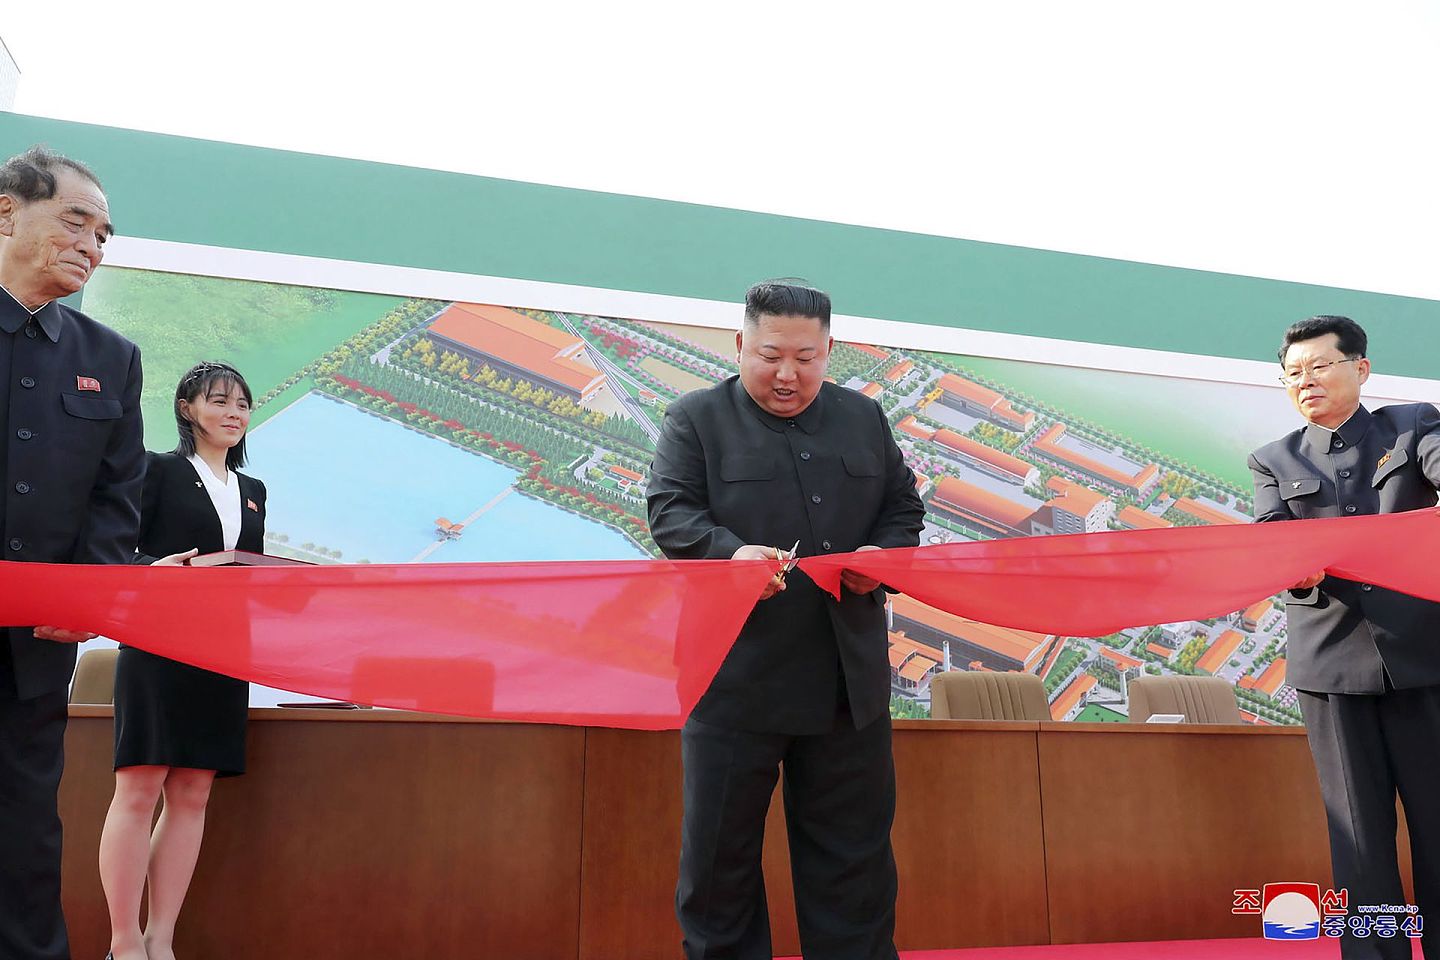 金正恩于2020年5月1日出席位于平安南道的顺天磷肥工厂竣工仪式，金与正（左二）为其递上剪彩用的剪刀。（Reuters）